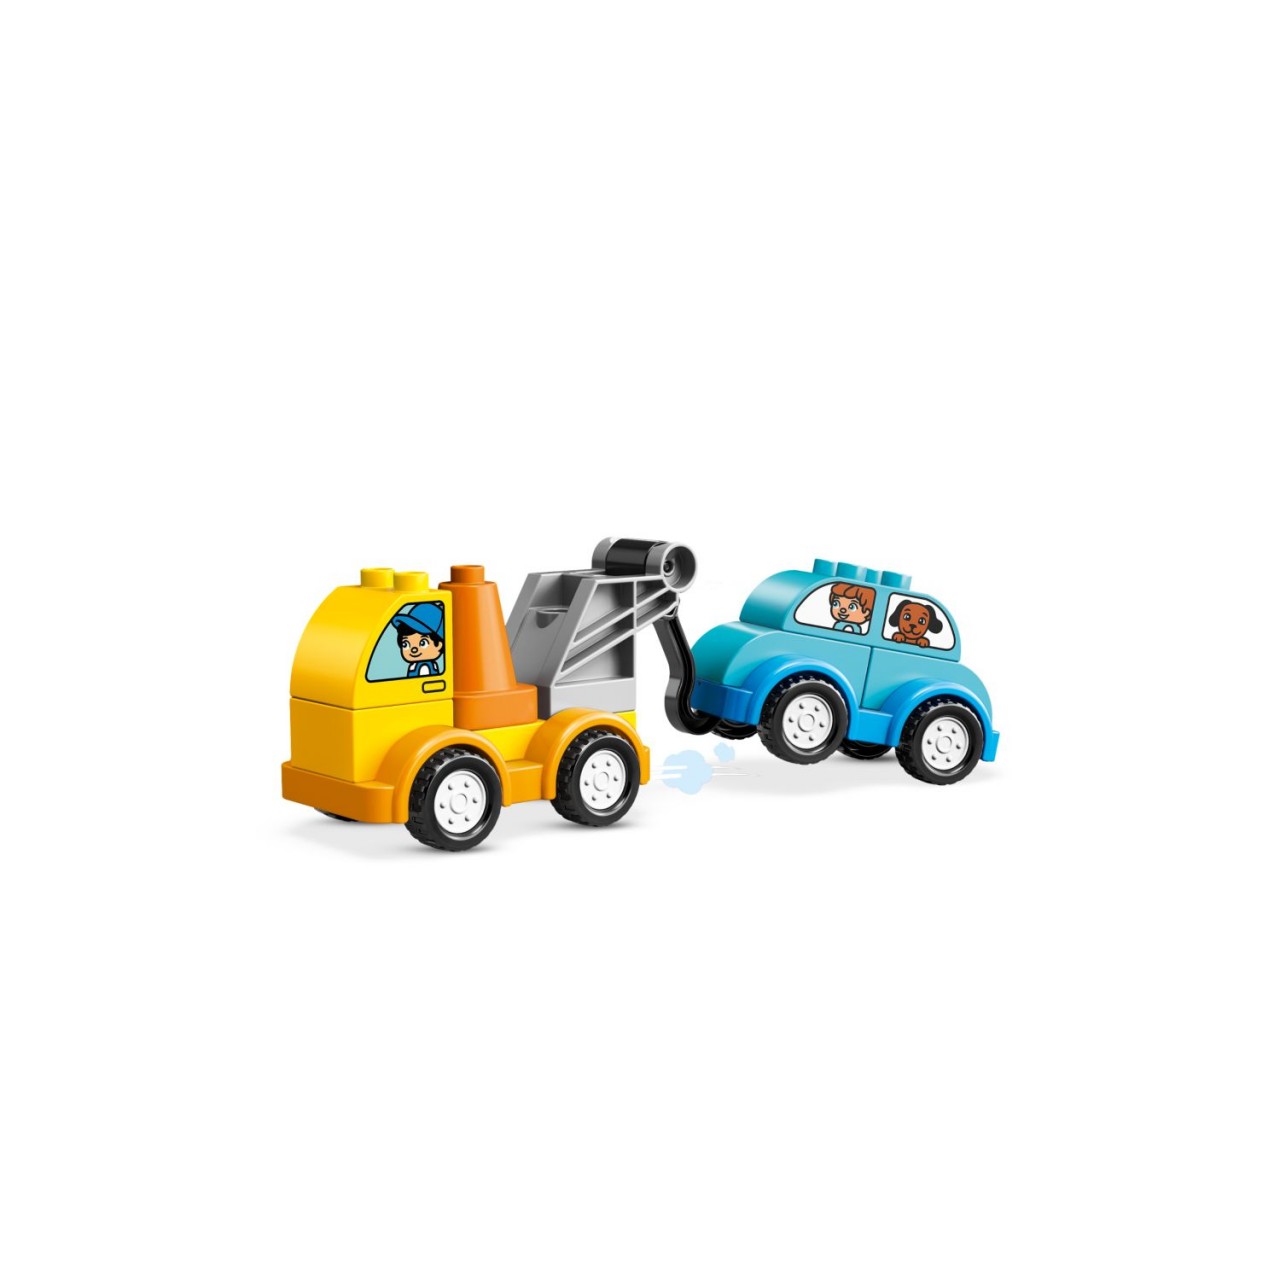 LEGO DUPLO 10883 Mein erster Abschleppwagen